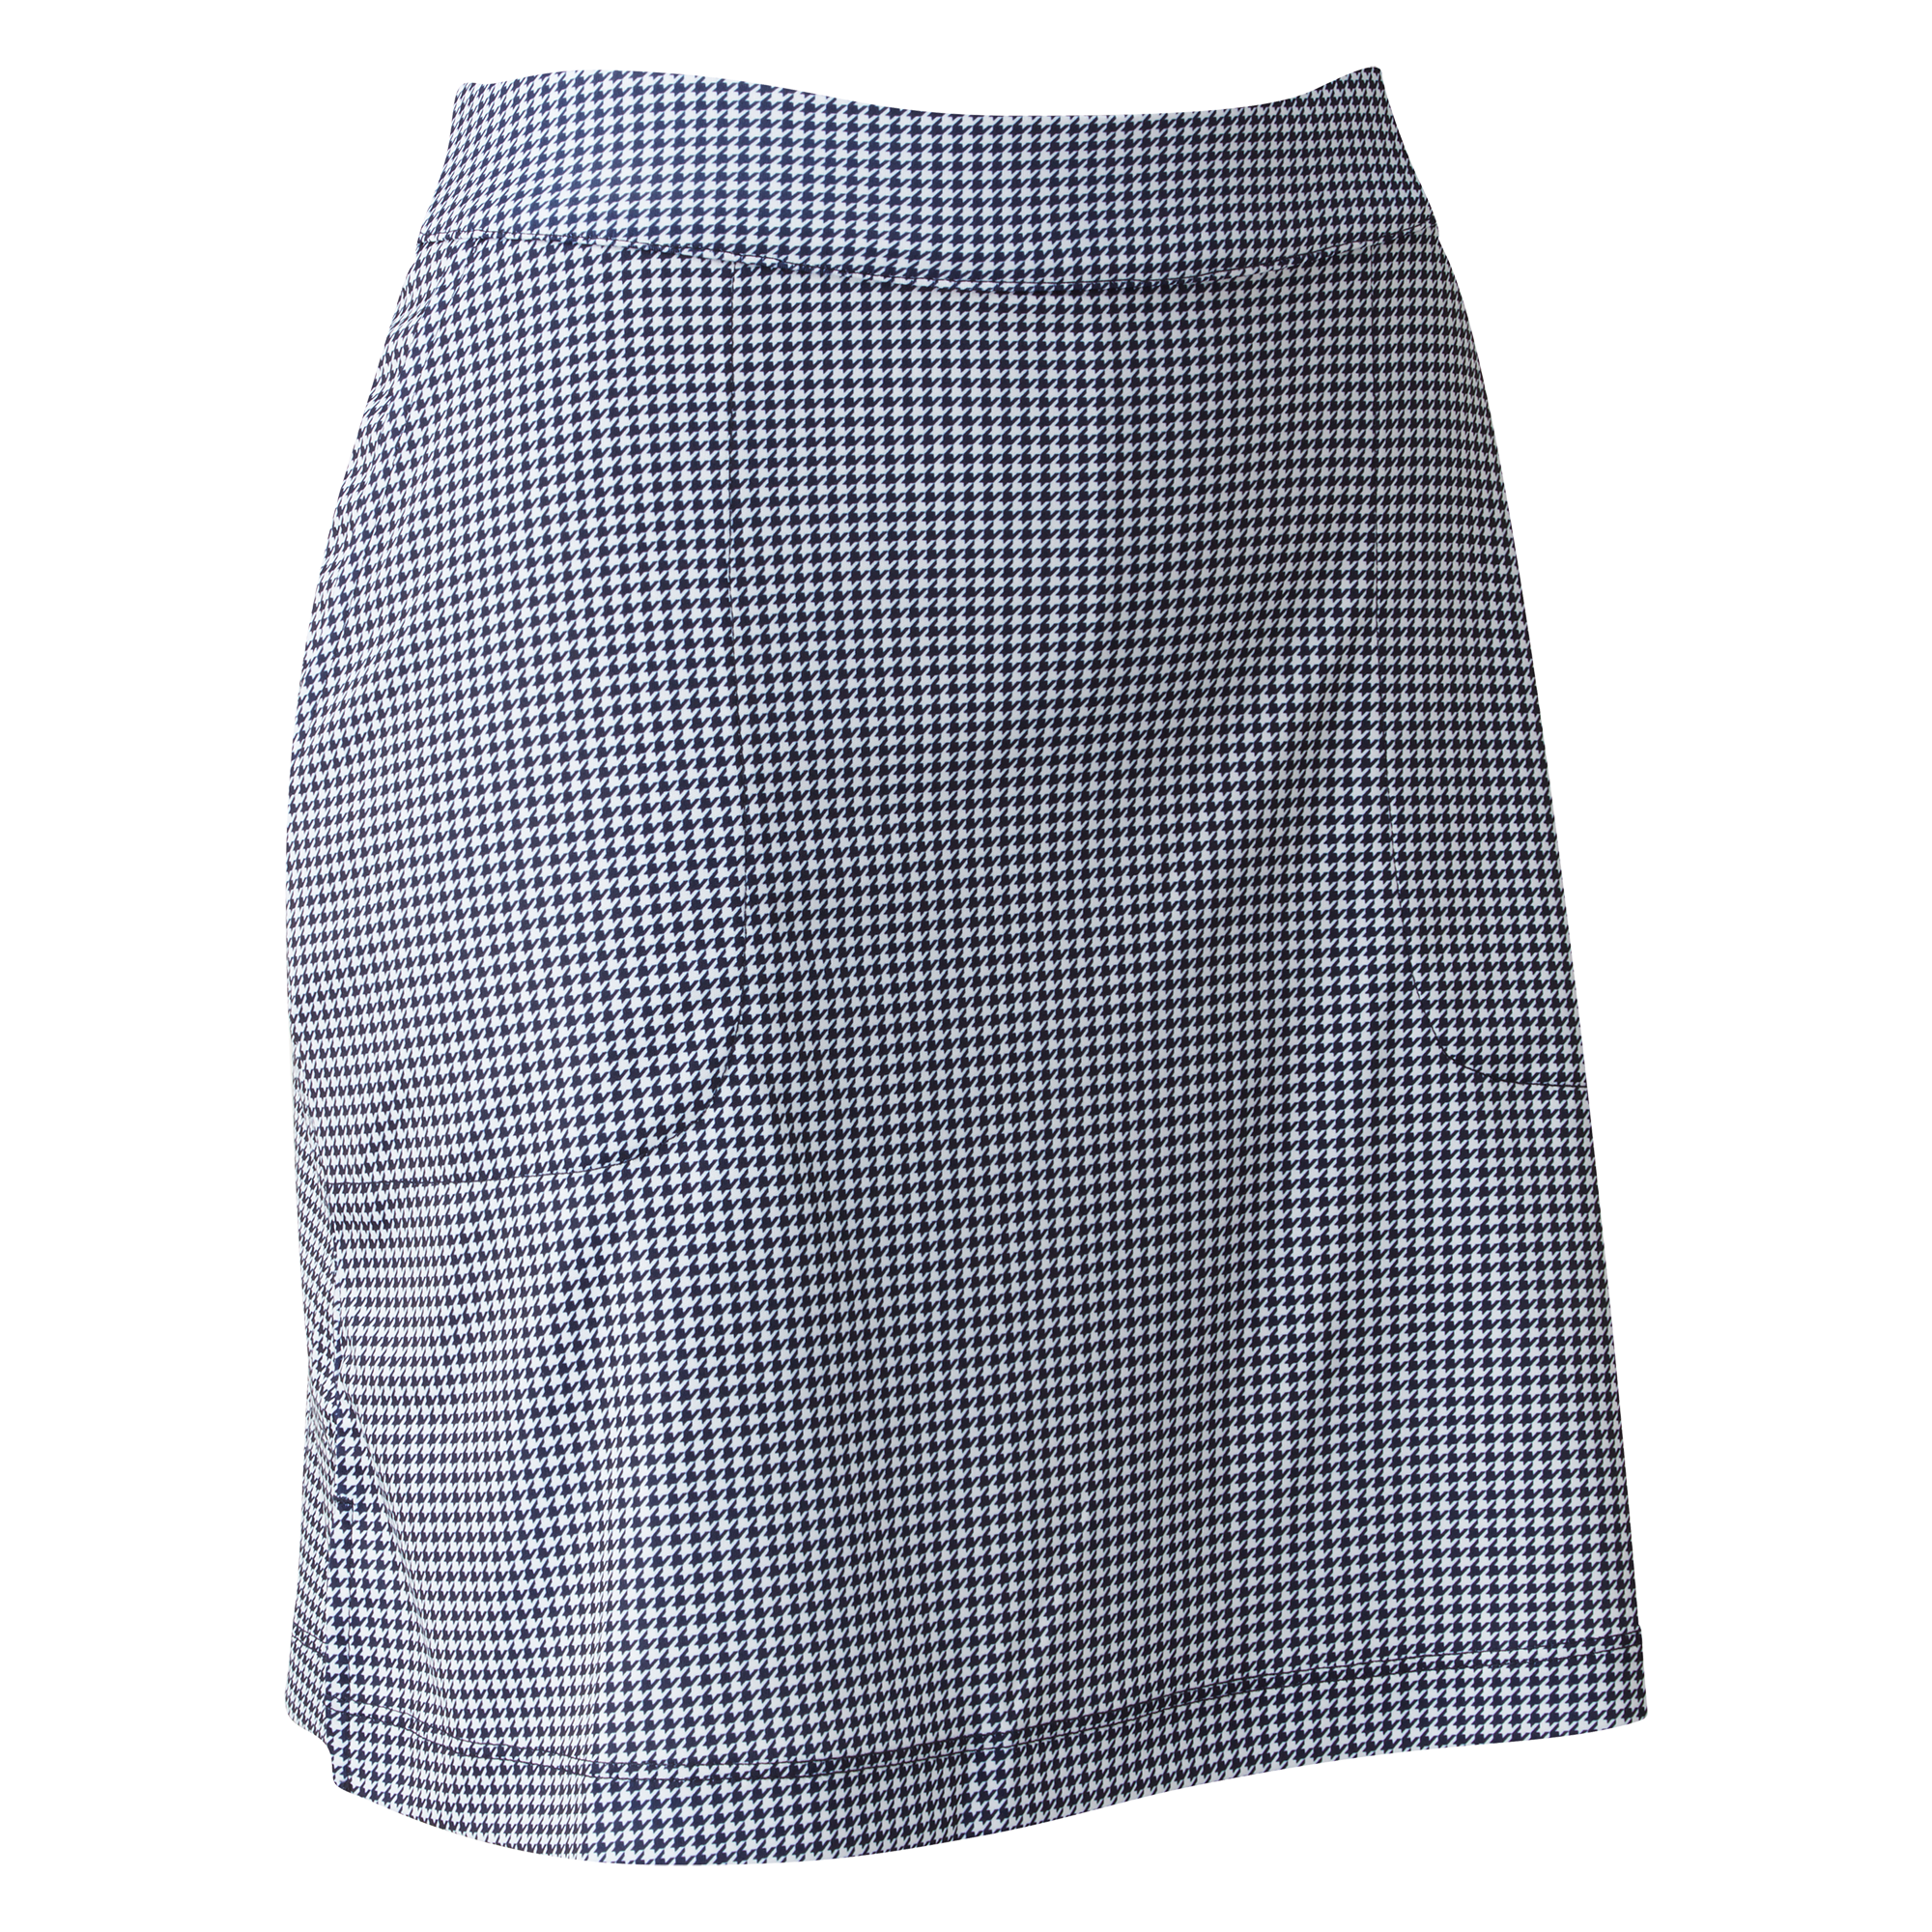 FootJoy Interlink Print dámská golfová sukně, bílá/tmavě modrá